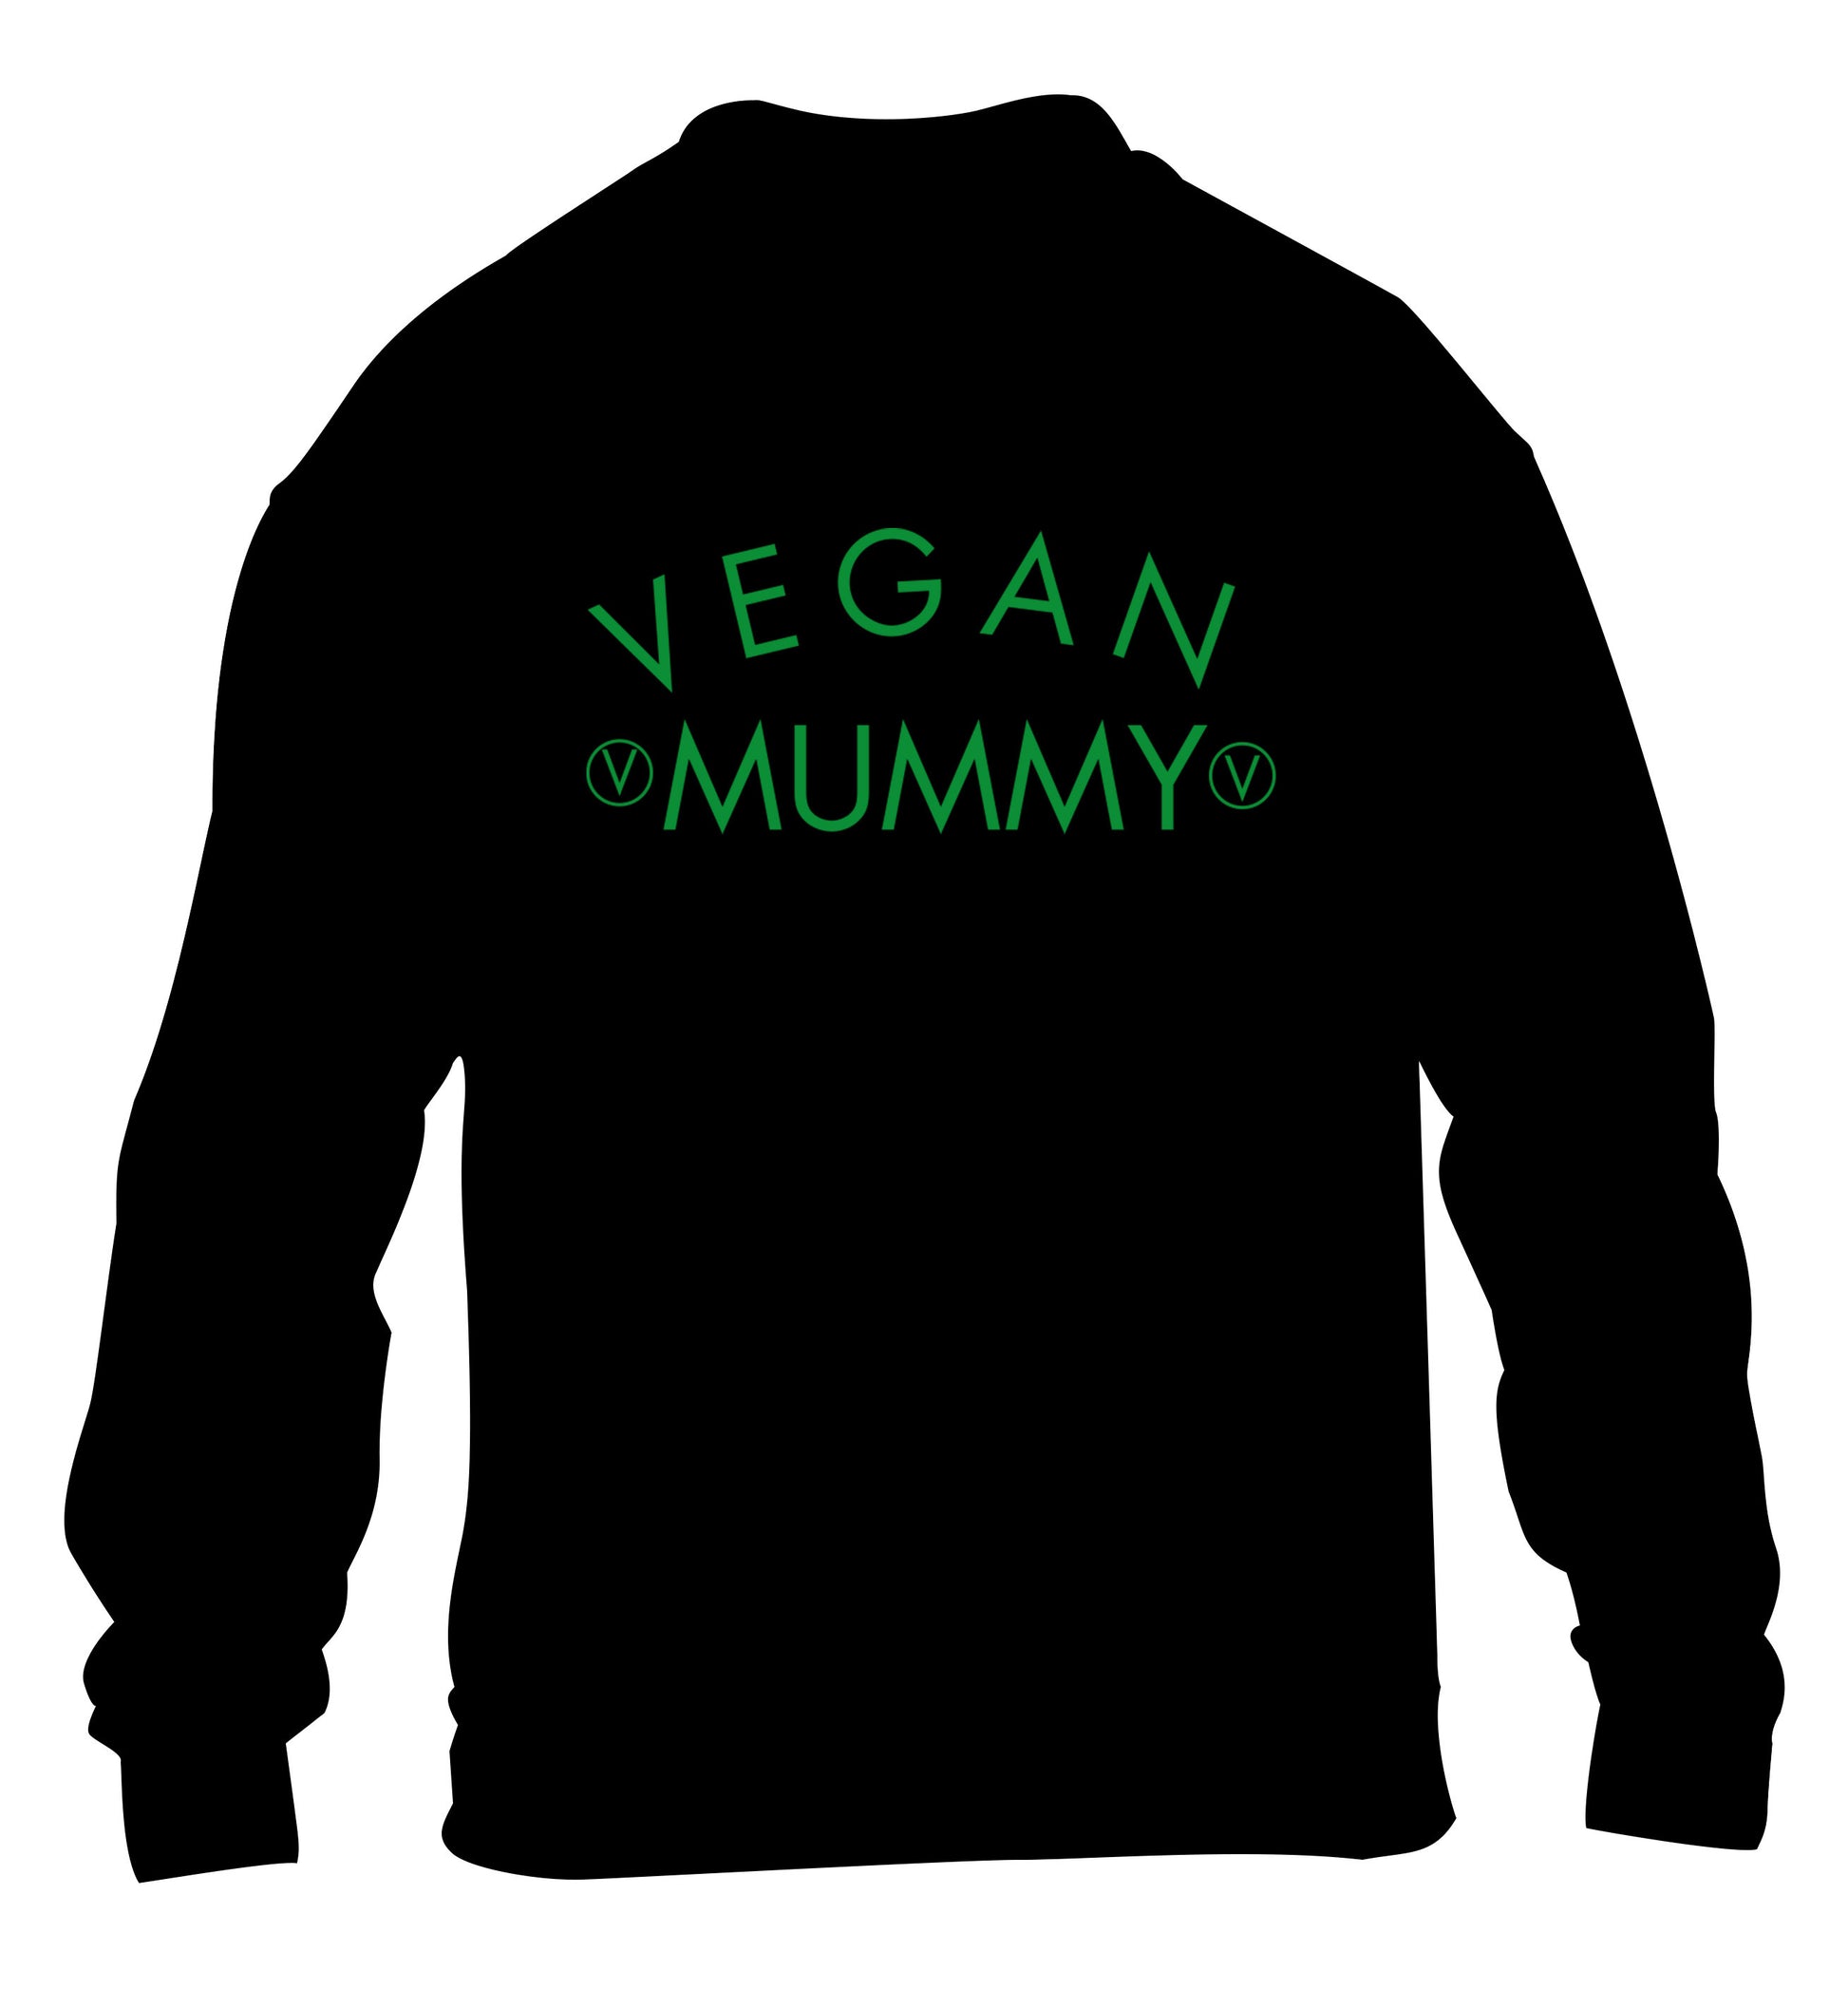 Vegan mummy children's black sweater 12-14 Years